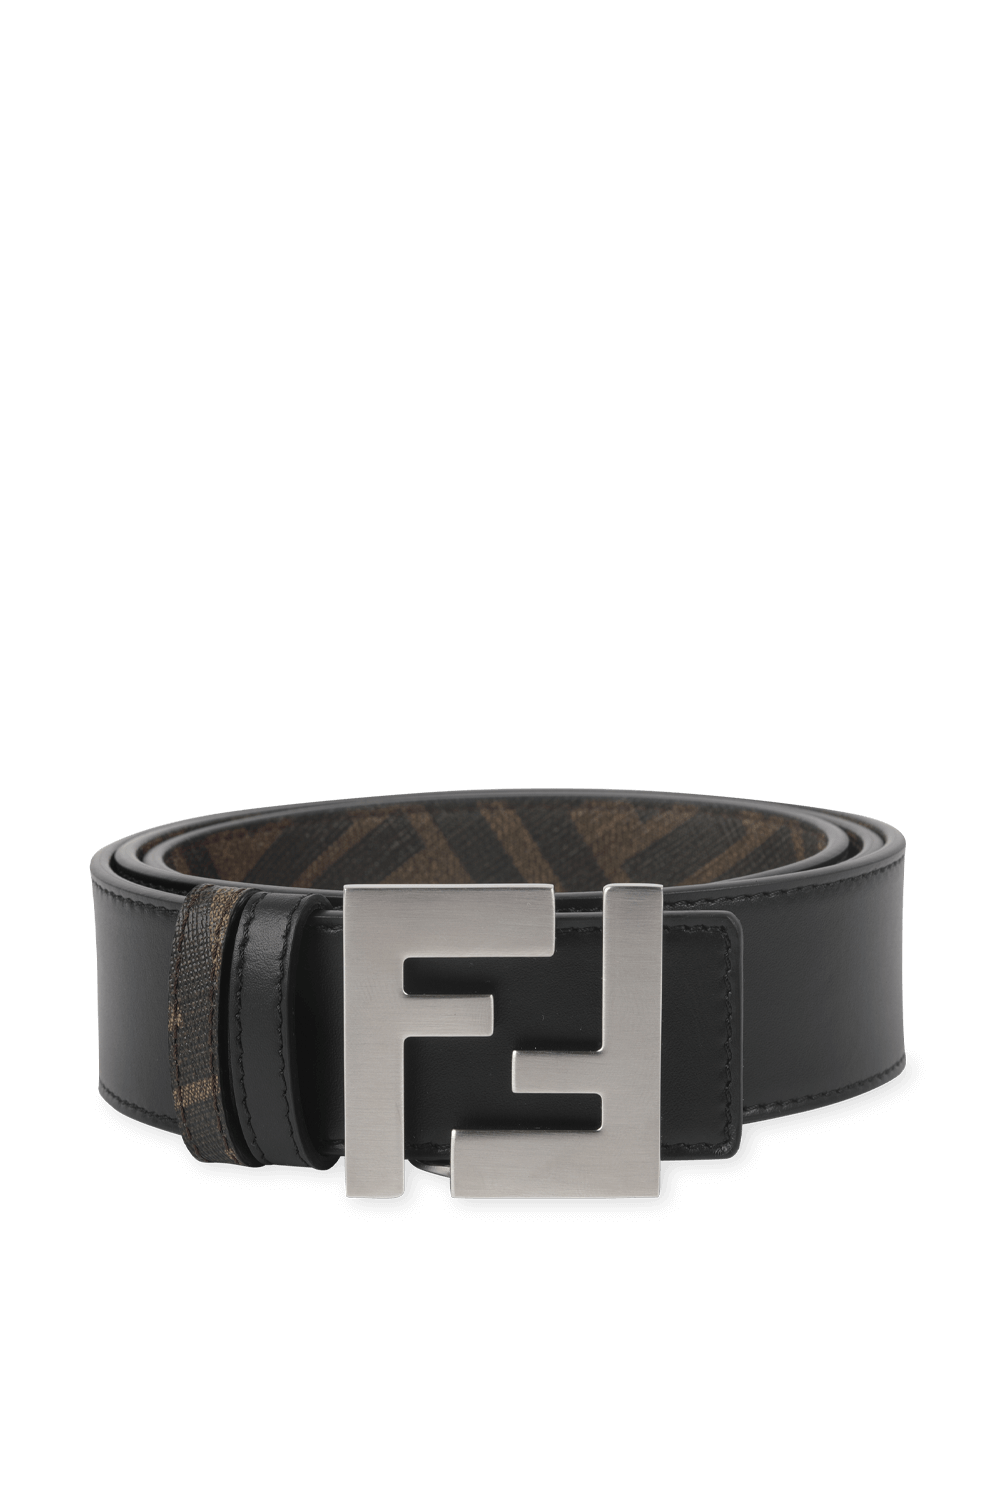 Reverisble Leather Belt in Brown FENDI